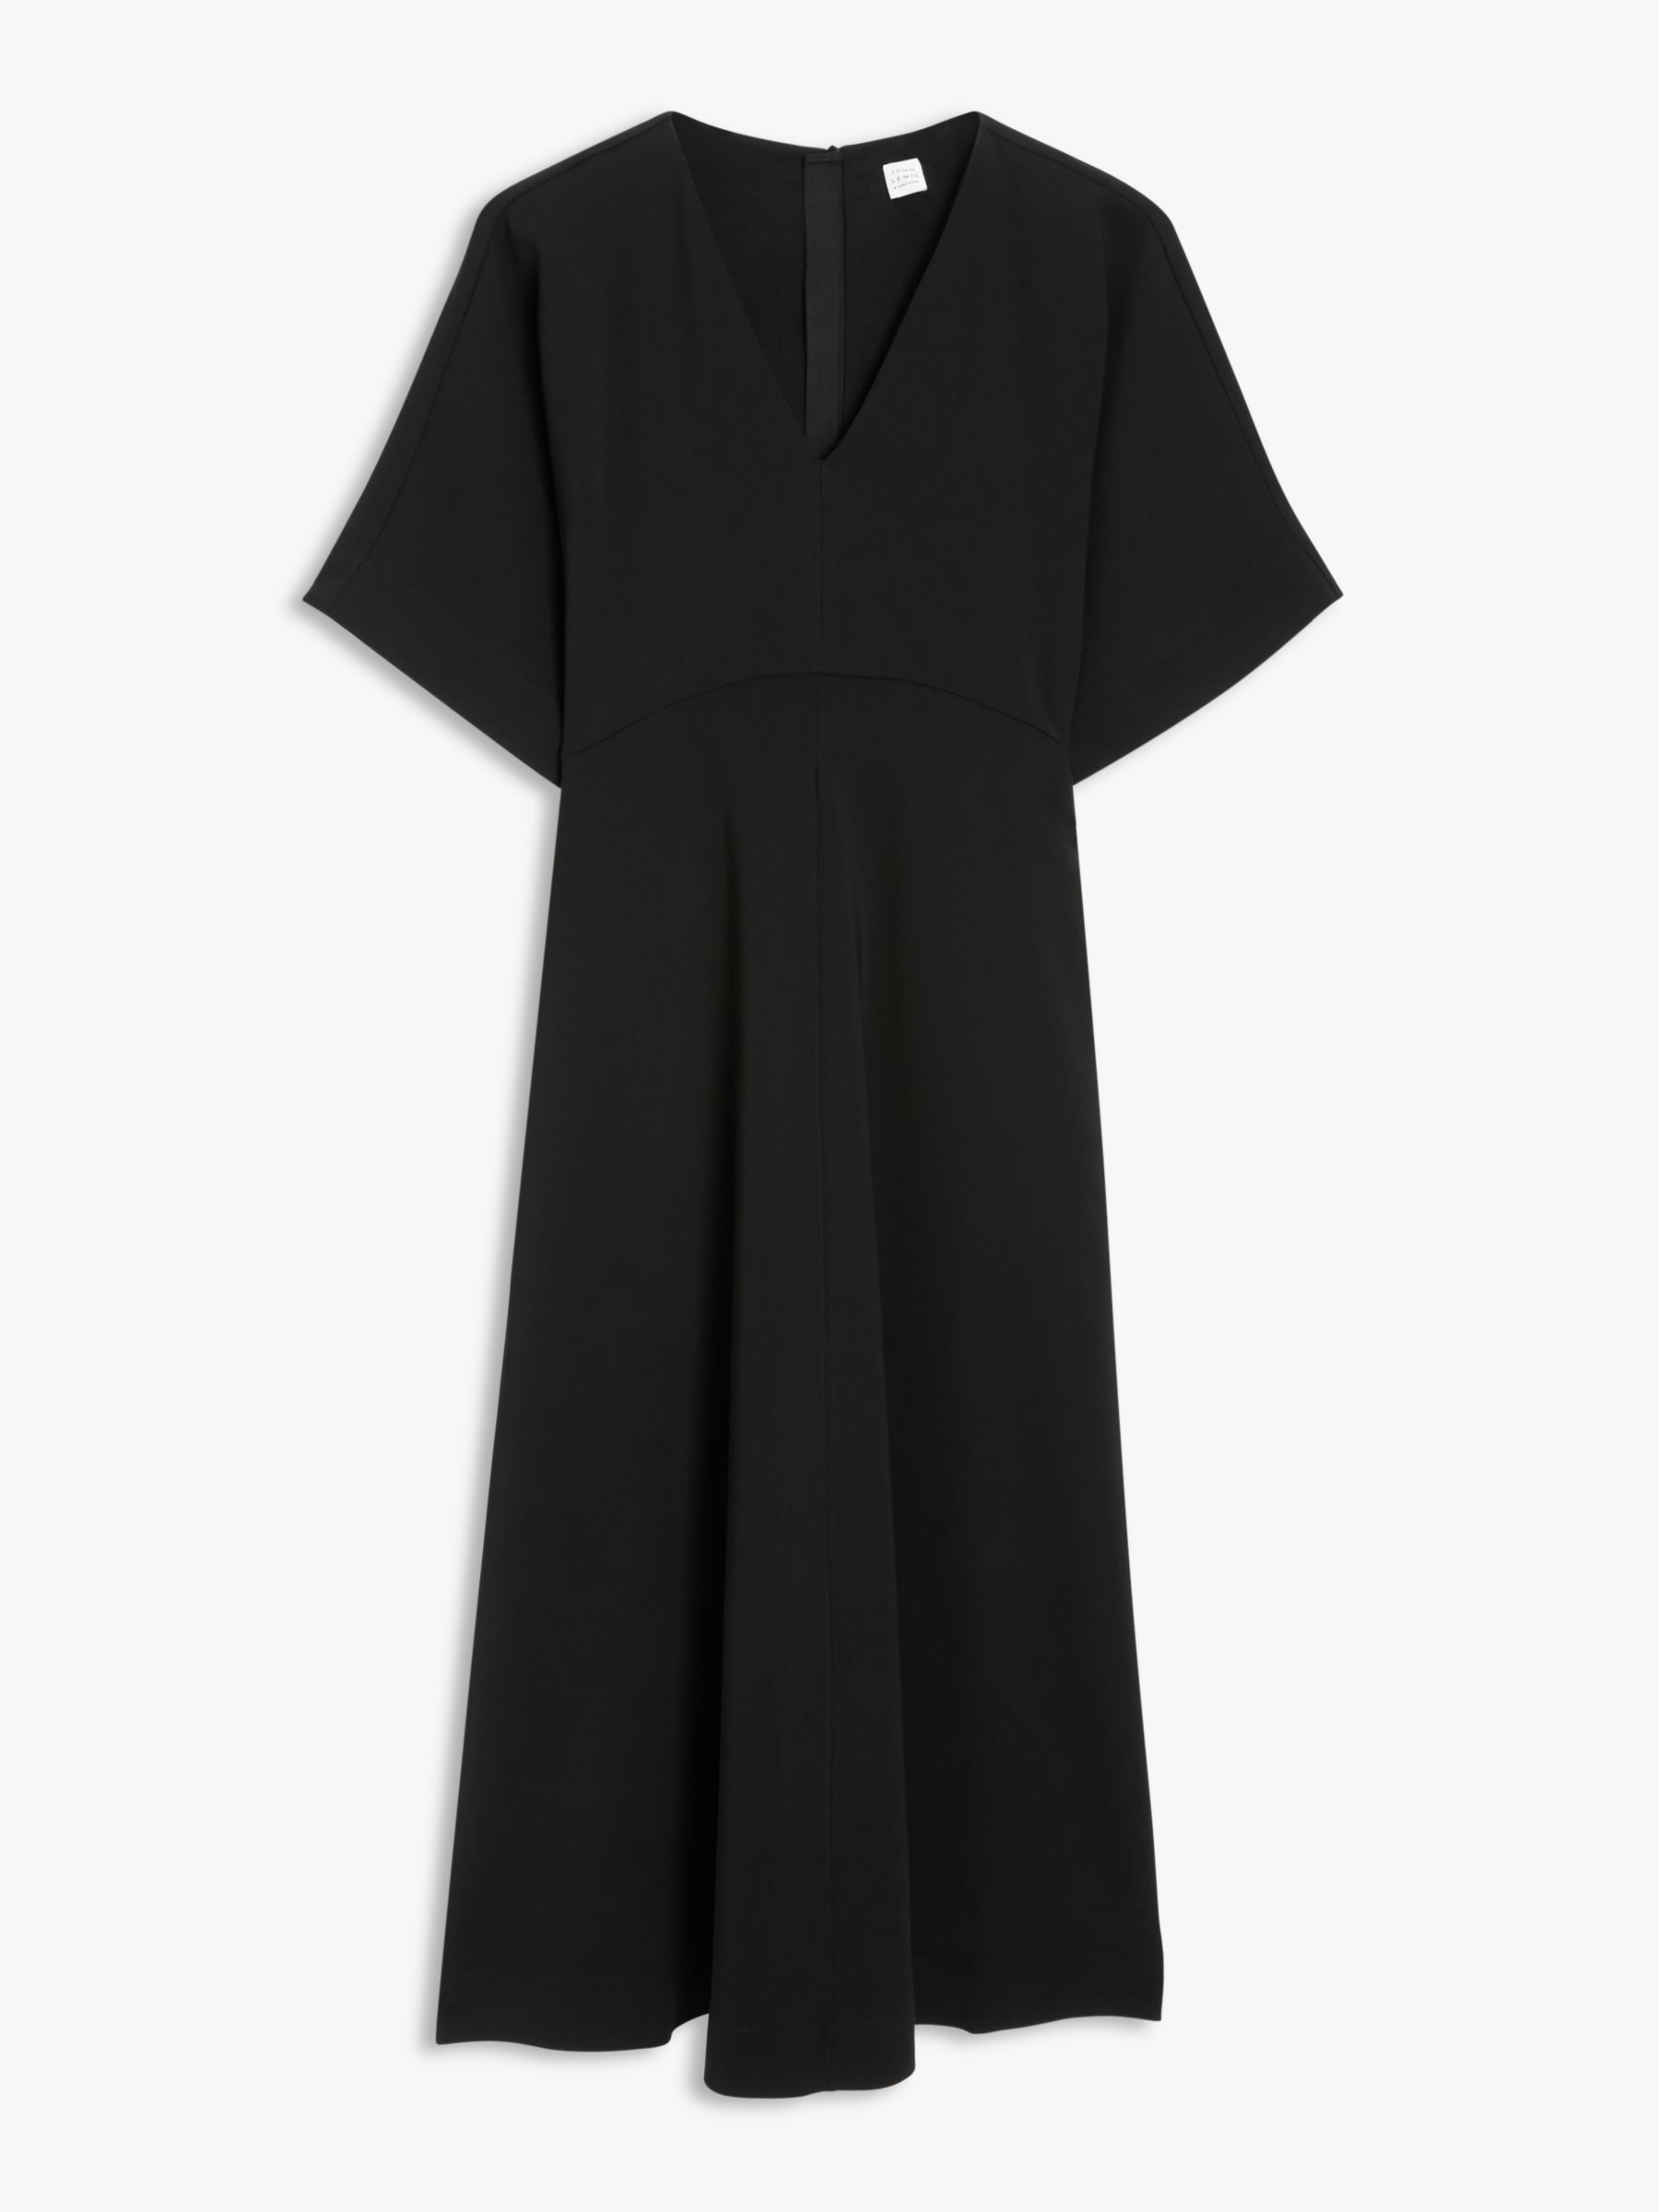 Buy John Lewis V-Neck Dress, Black Online at johnlewis.com